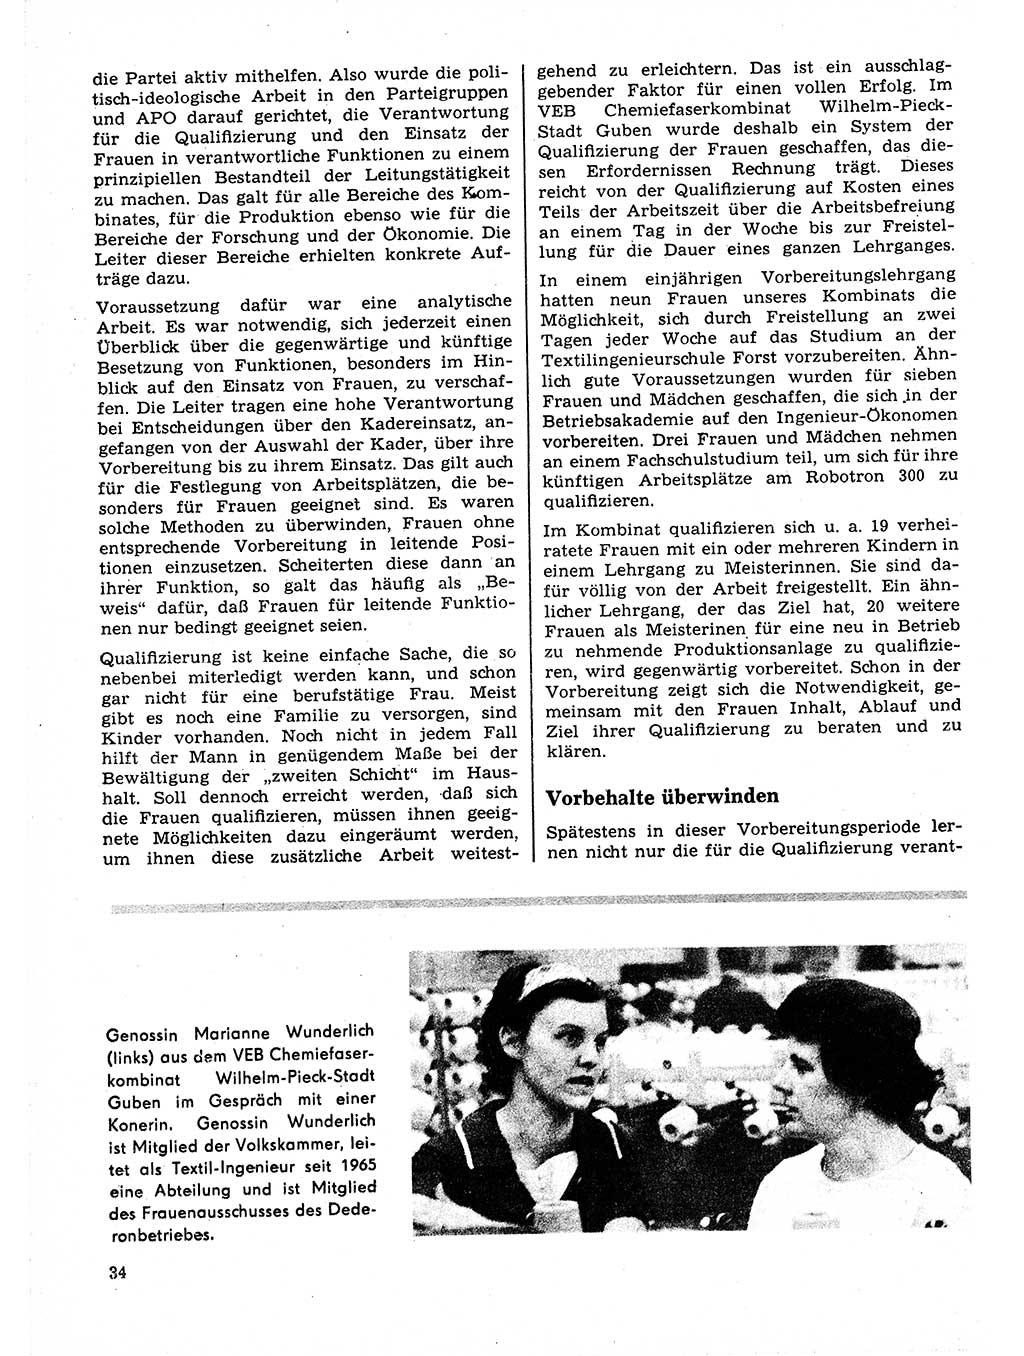 Neuer Weg (NW), Organ des Zentralkomitees (ZK) der SED (Sozialistische Einheitspartei Deutschlands) für Fragen des Parteilebens, 23. Jahrgang [Deutsche Demokratische Republik (DDR)] 1968, Seite 34 (NW ZK SED DDR 1968, S. 34)